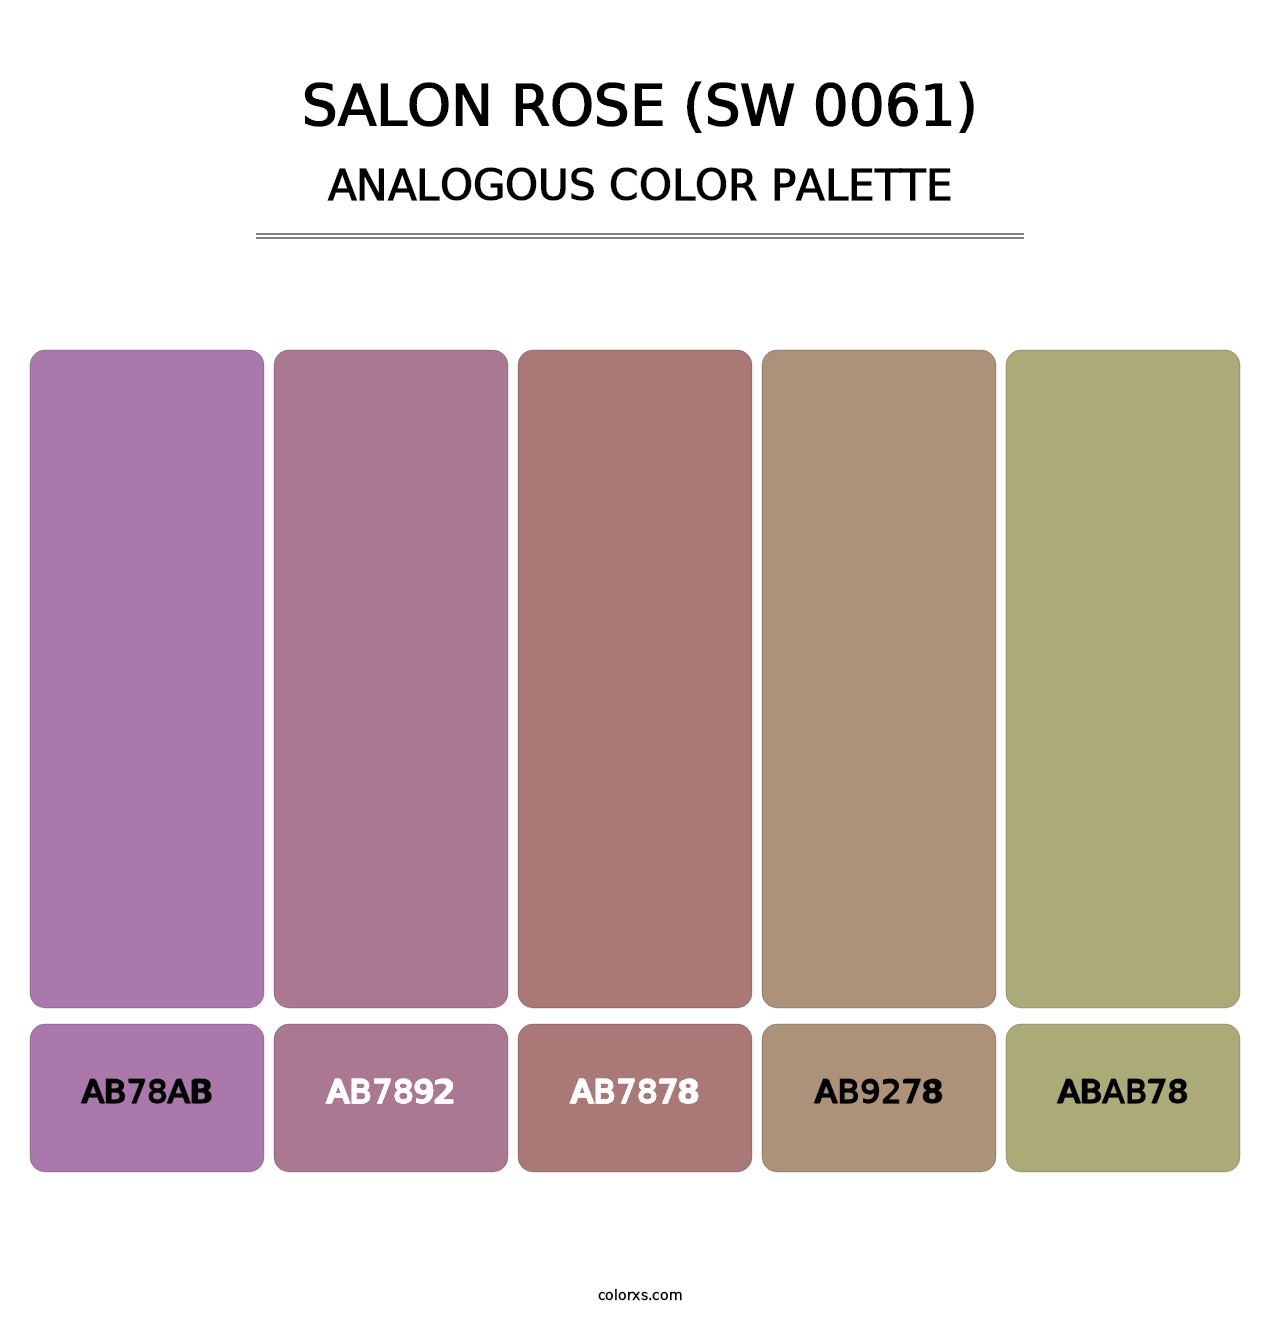 Salon Rose (SW 0061) - Analogous Color Palette